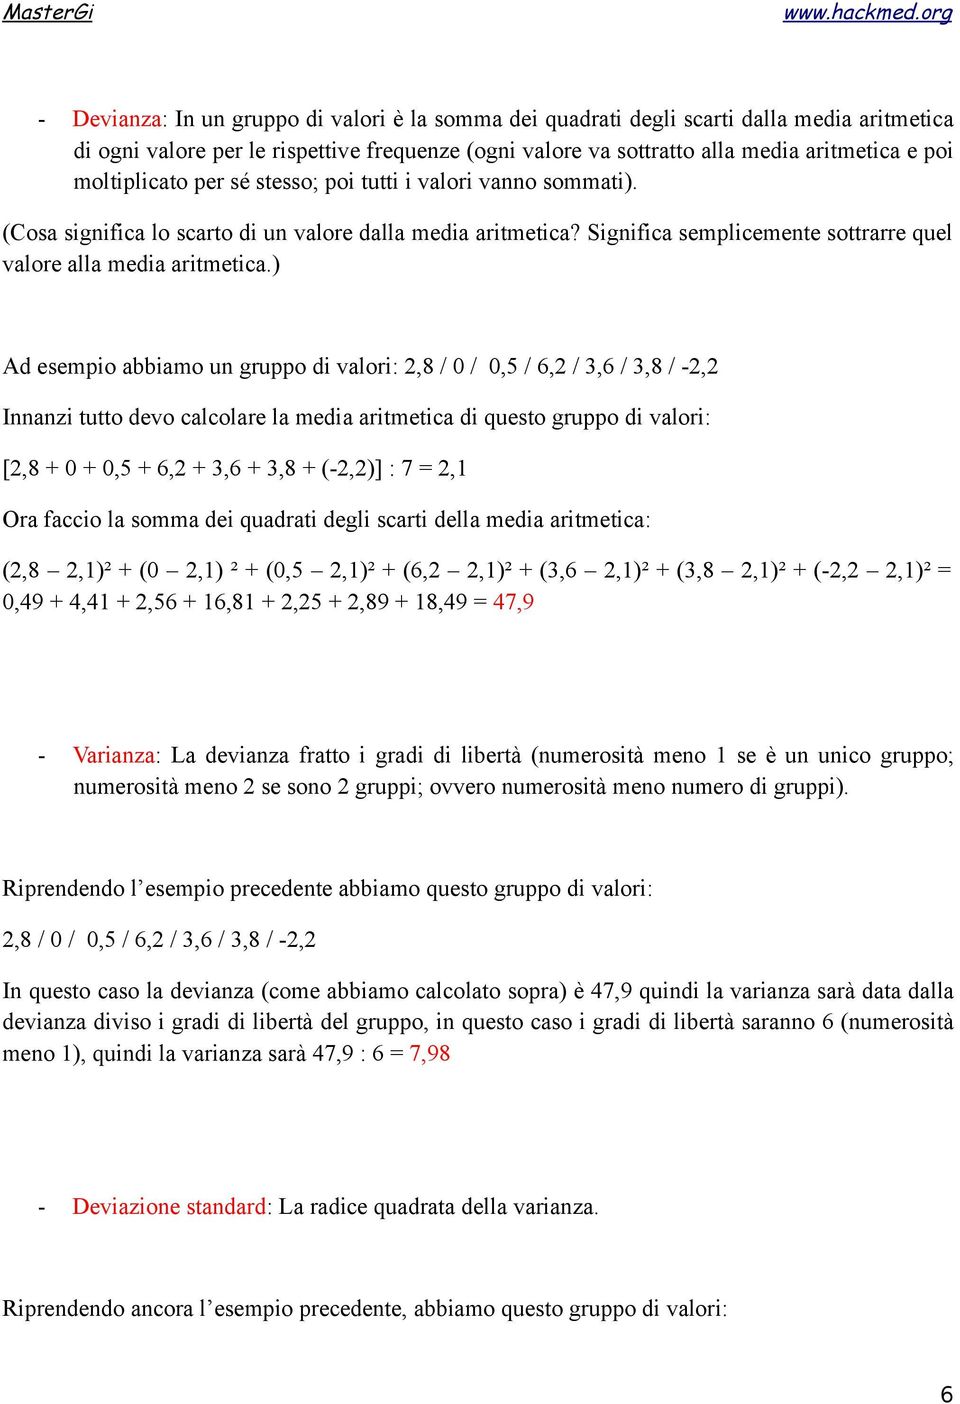 ) Ad esempio abbiamo un gruppo di valori: 2,8 / 0 / 0,5 / 6,2 / 3,6 / 3,8 / -2,2 Innanzi tutto devo calcolare la media aritmetica di questo gruppo di valori: [2,8 + 0 + 0,5 + 6,2 + 3,6 + 3,8 +